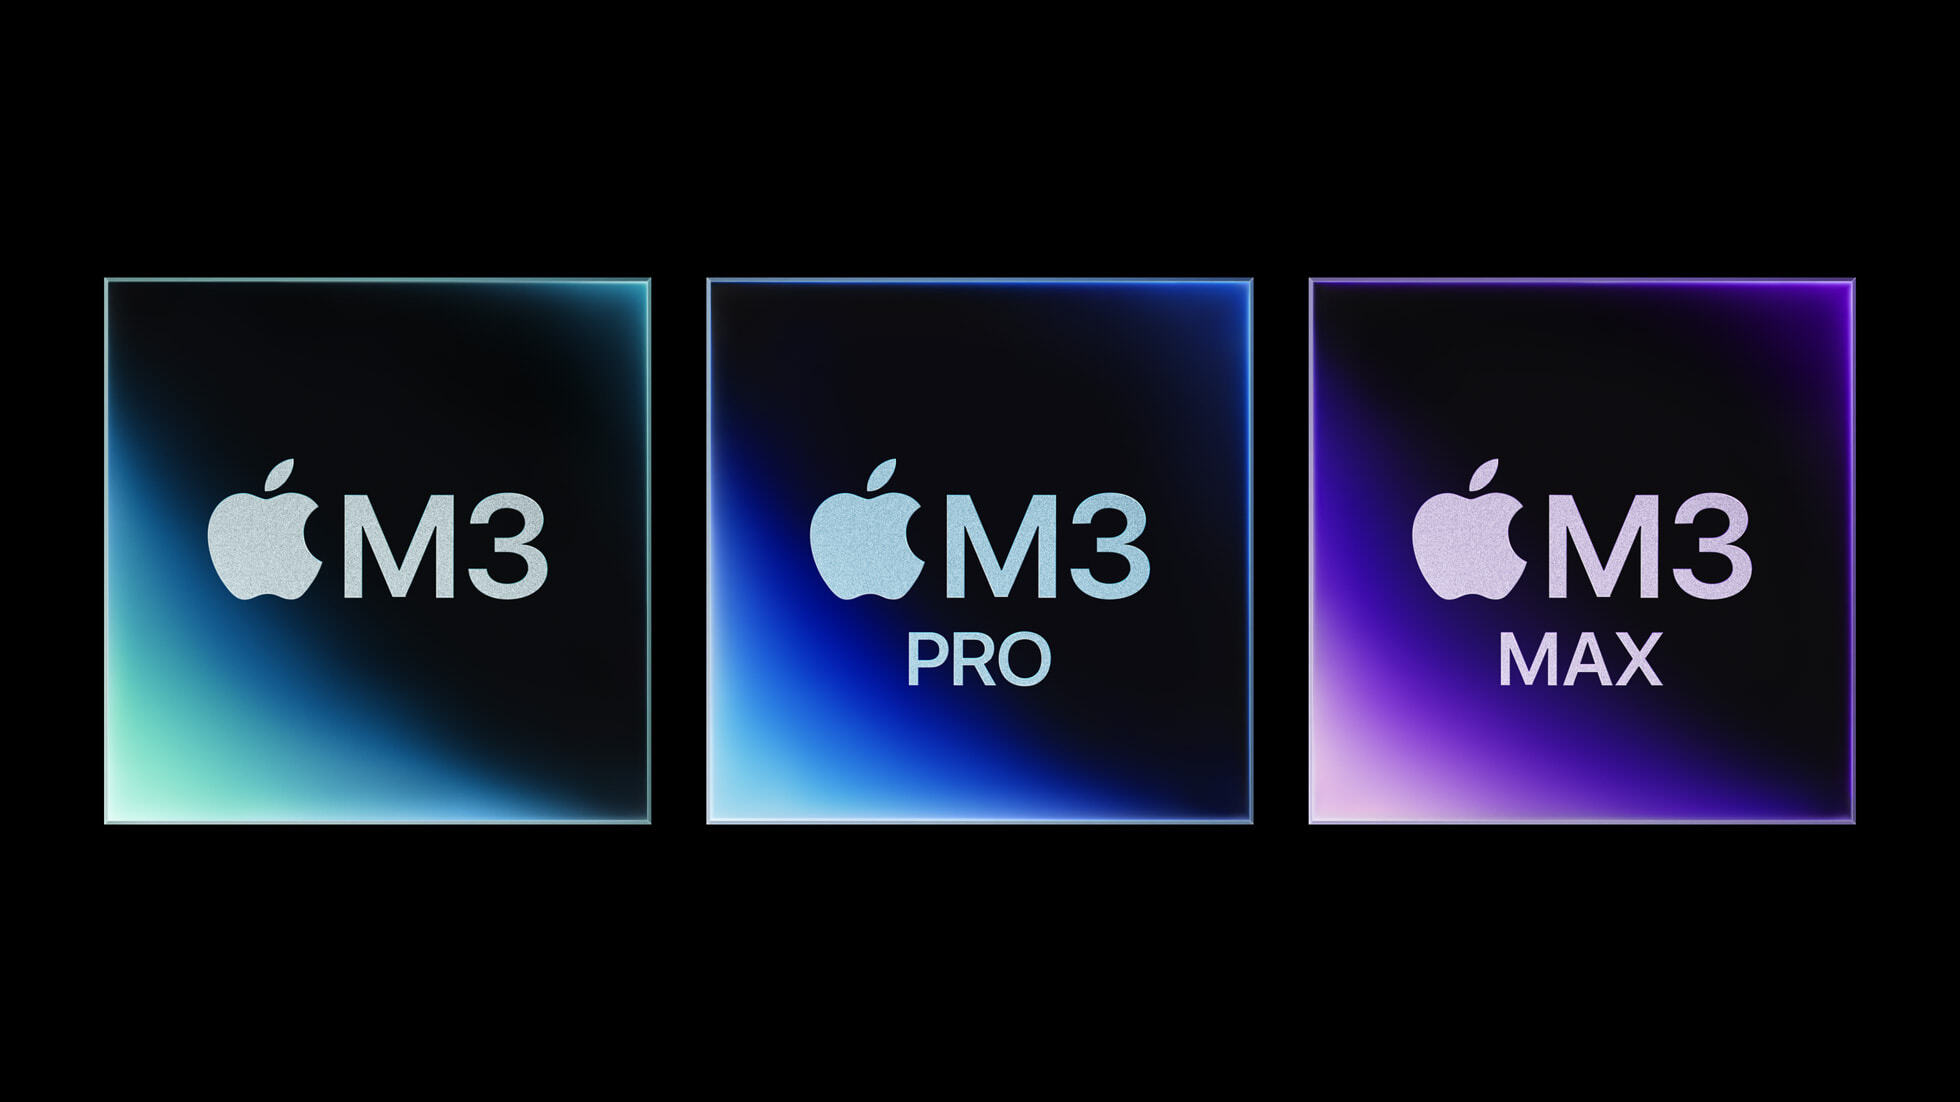 Apple        M3, M3 Pro  M3 Max